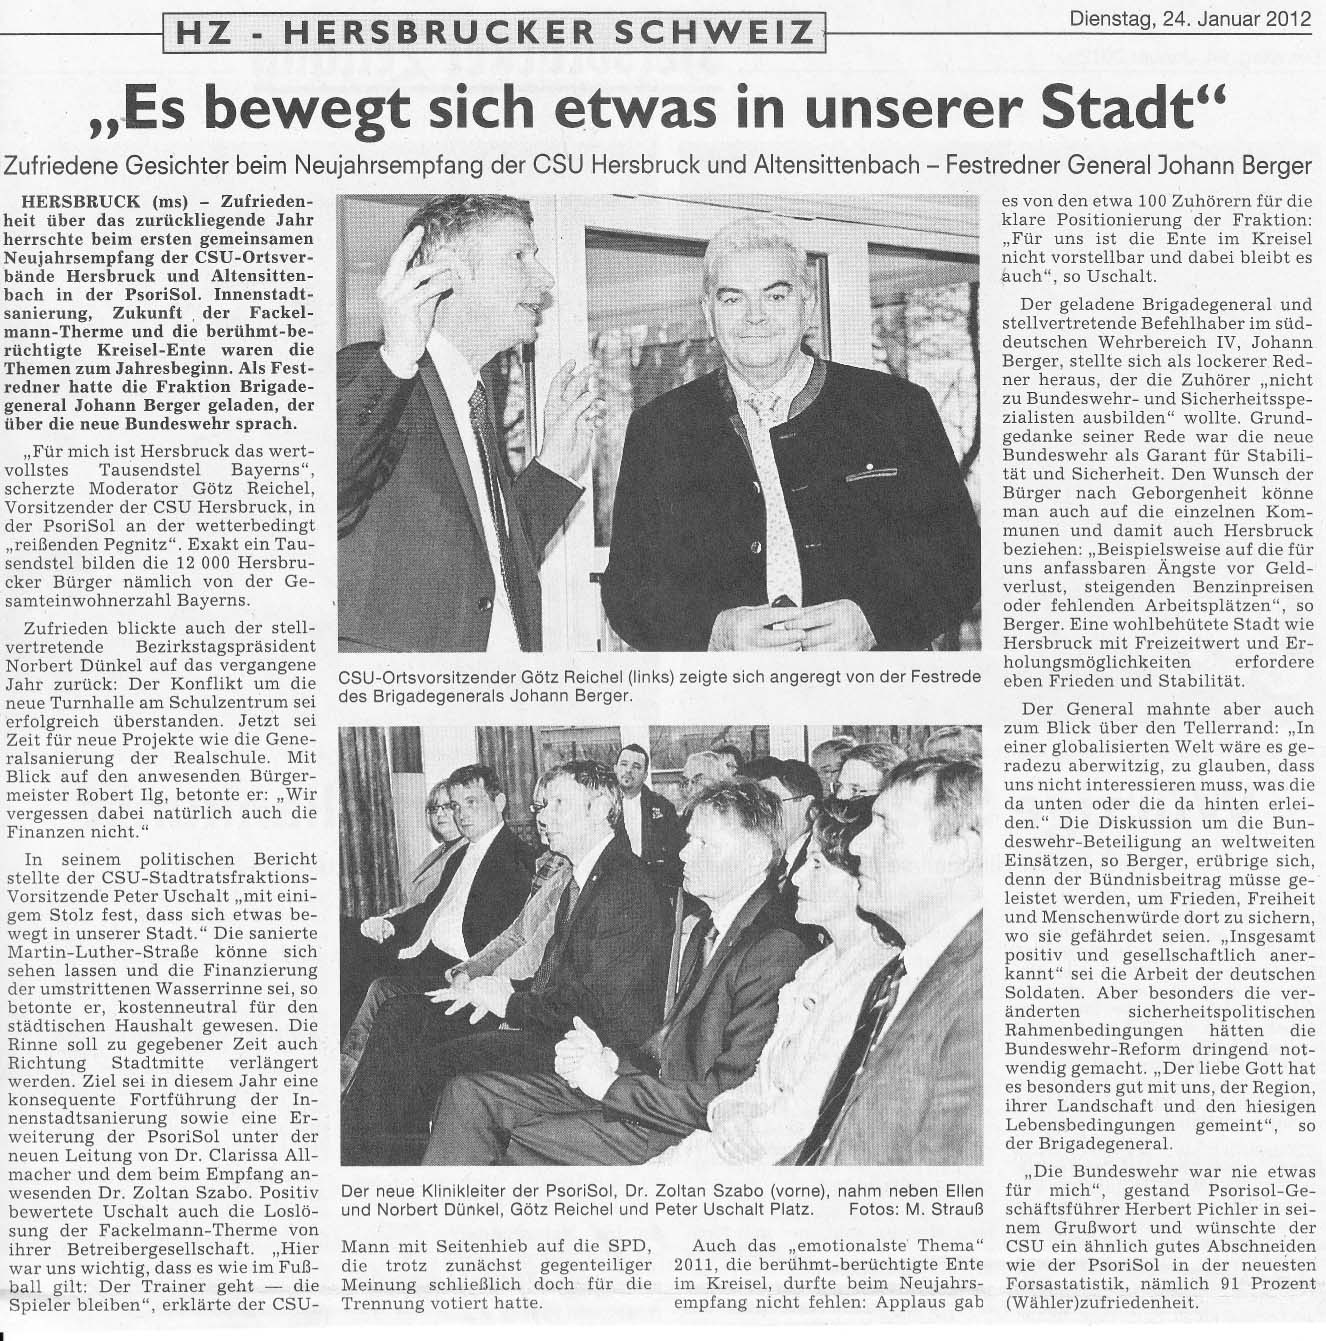 Pressebericht der Hersbrucker Zeitung vom 24.01.2012